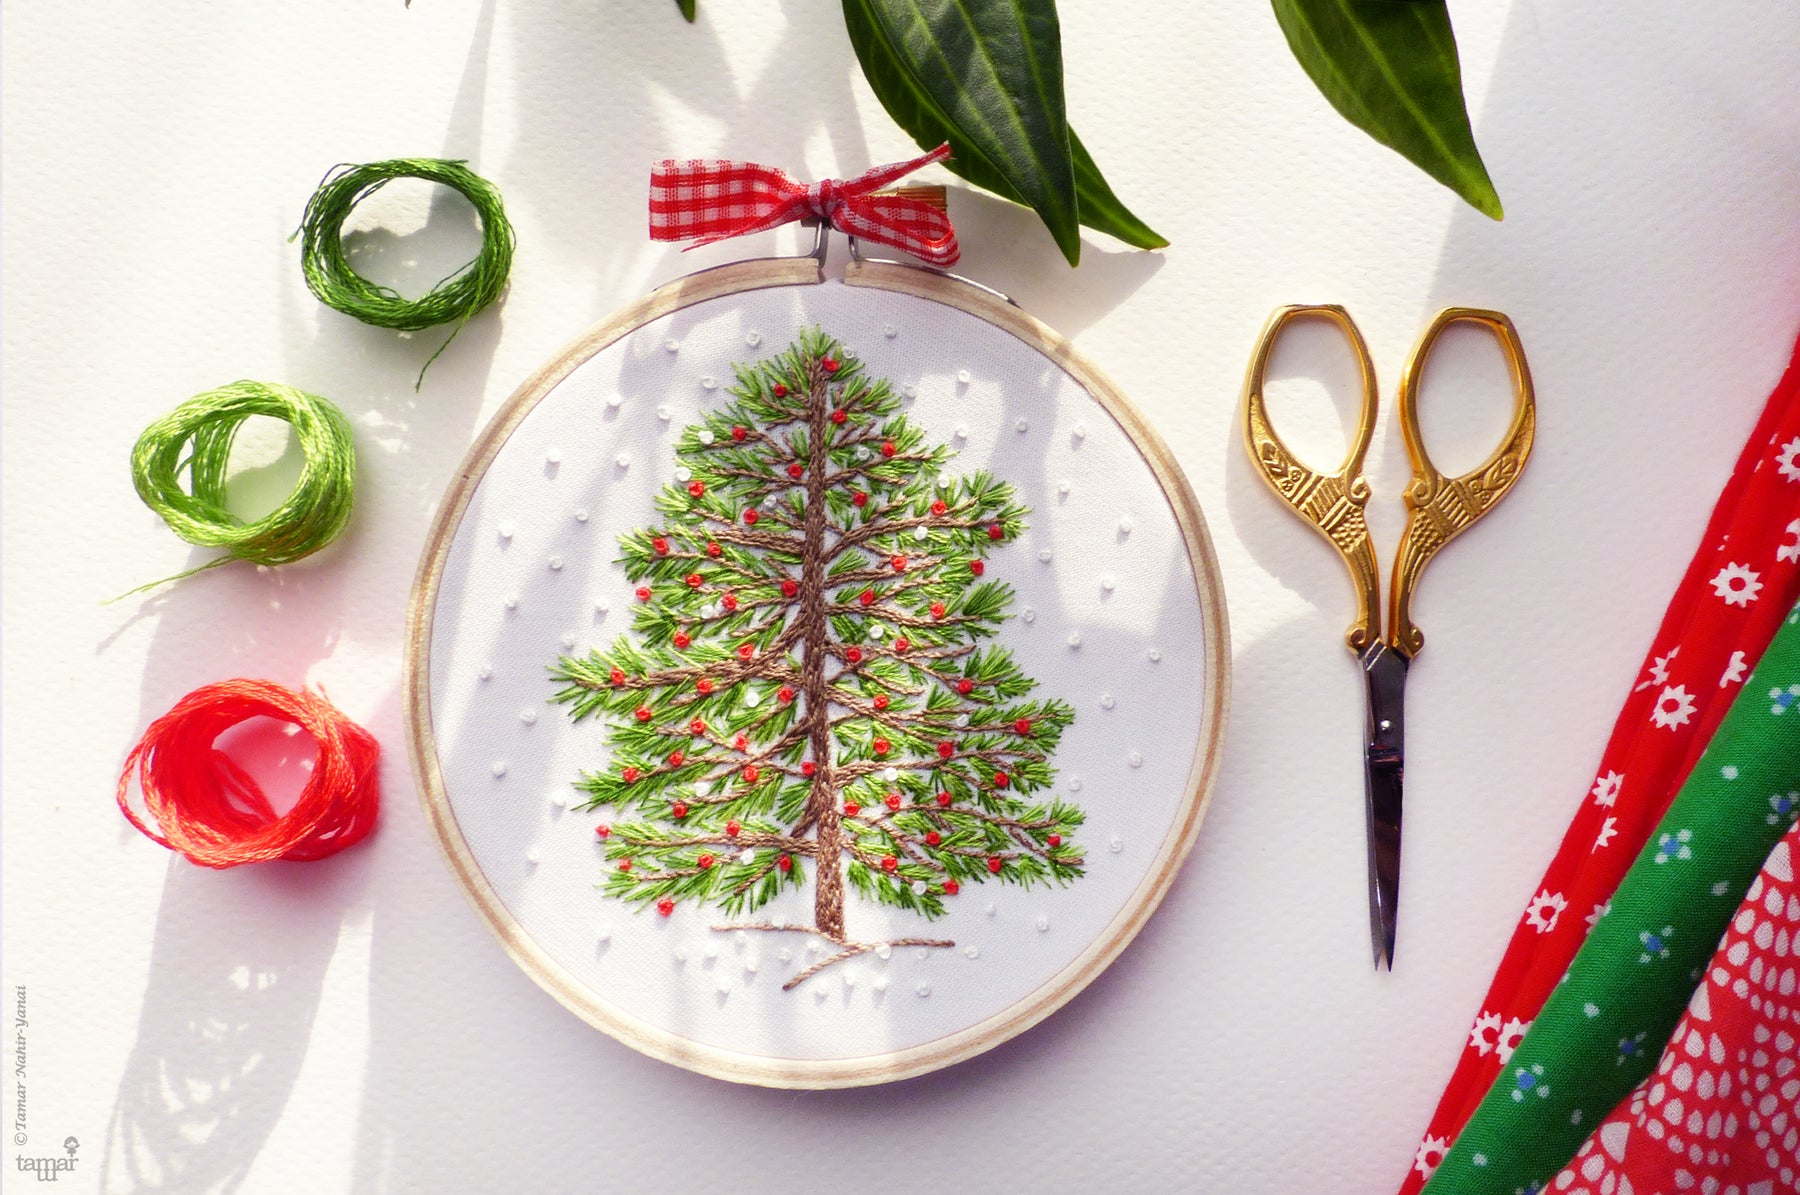 Christmas Tree, Christmas Embroidery, Embroidery Kit